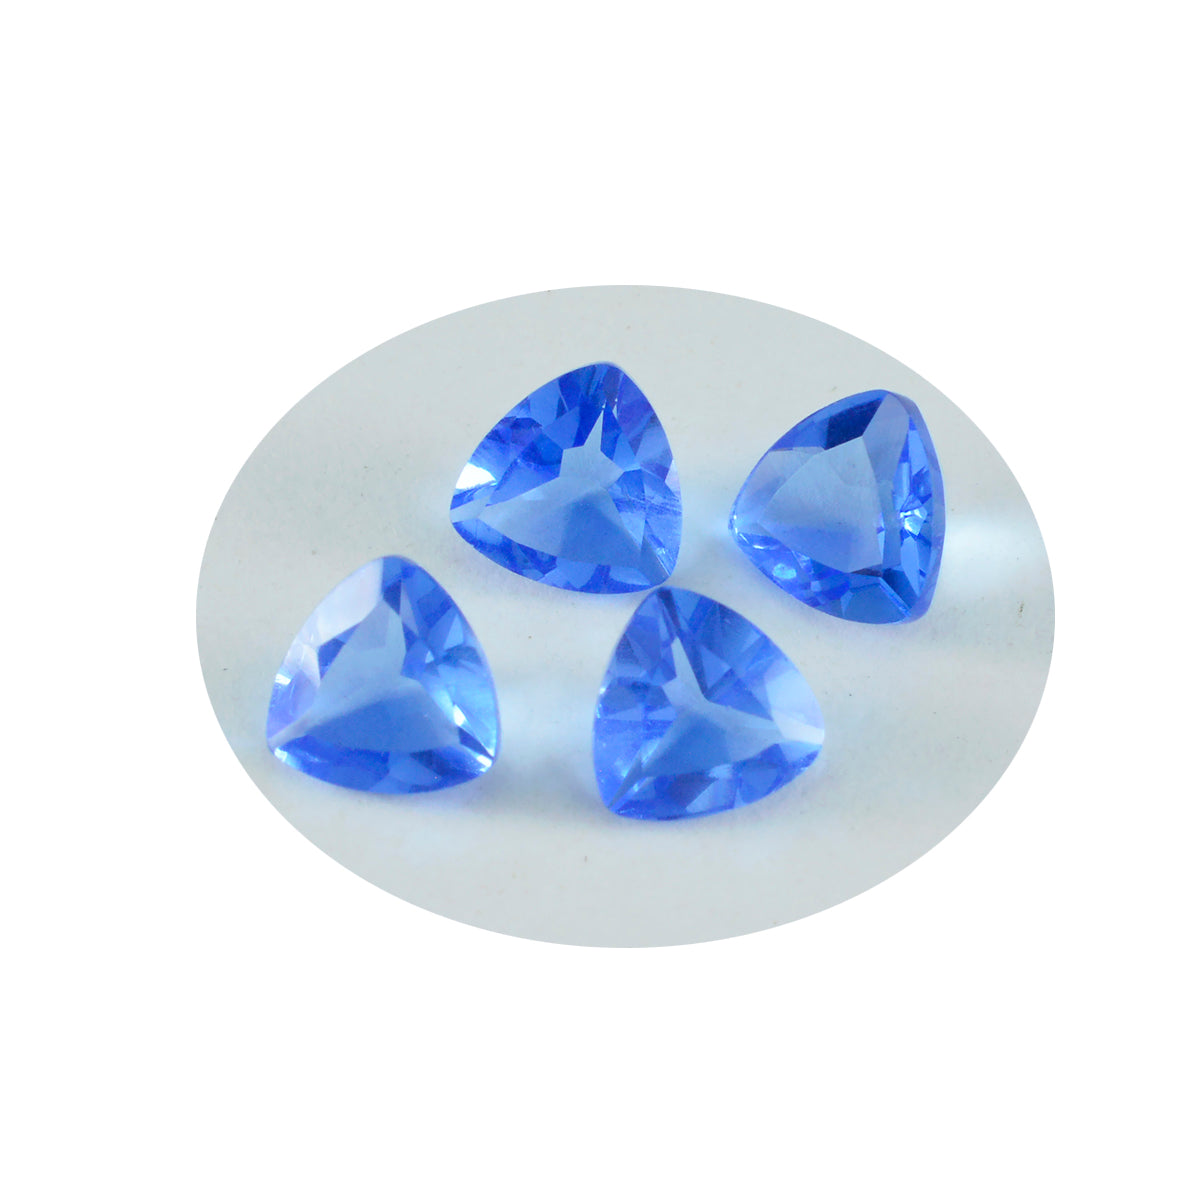 riyogems 1шт синий сапфир cz ограненный 15х15 мм форма триллион качественный свободный камень